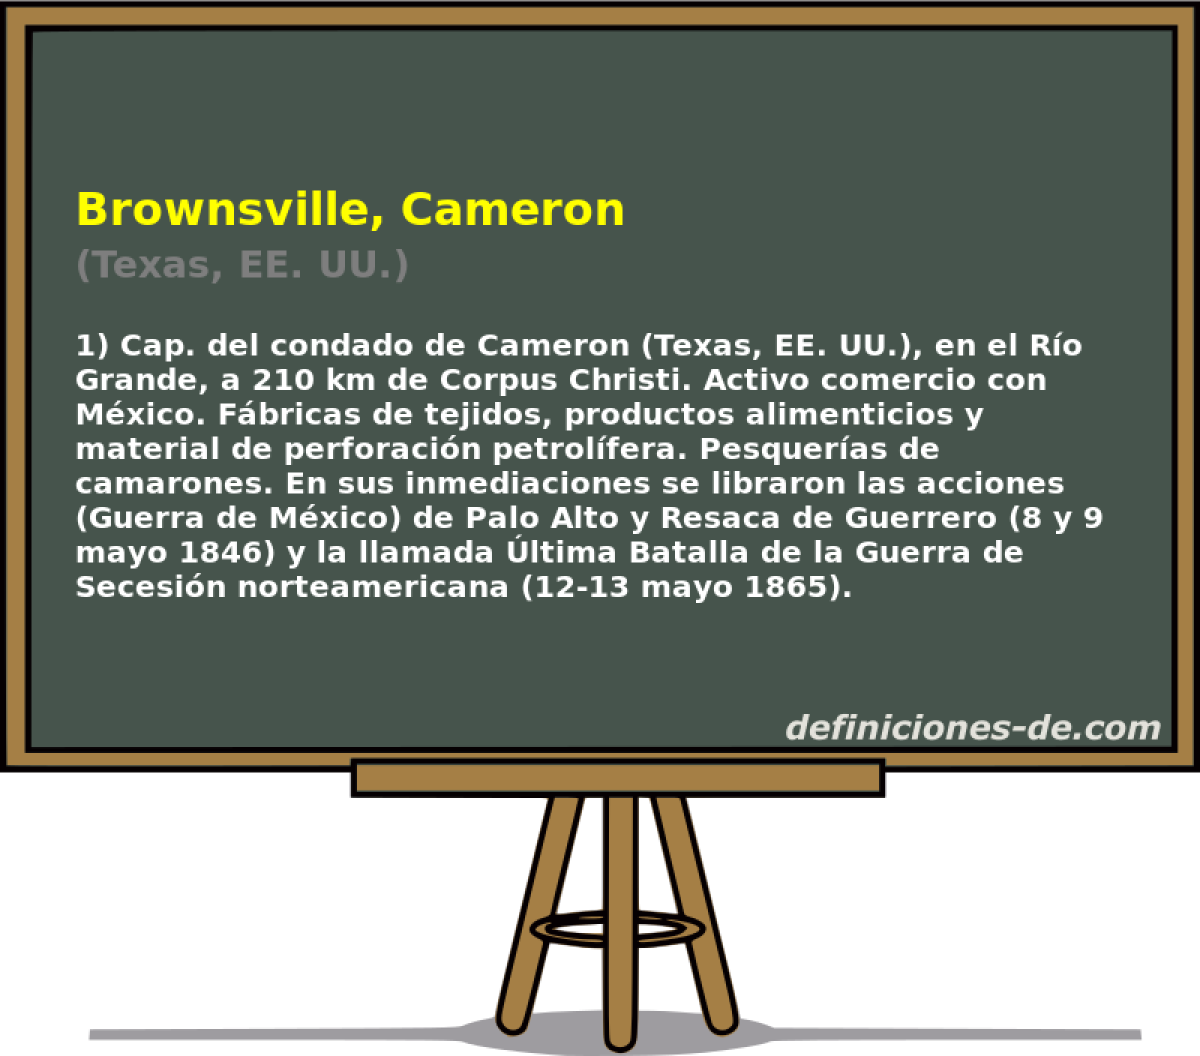 Brownsville, Cameron (Texas, EE. UU.)